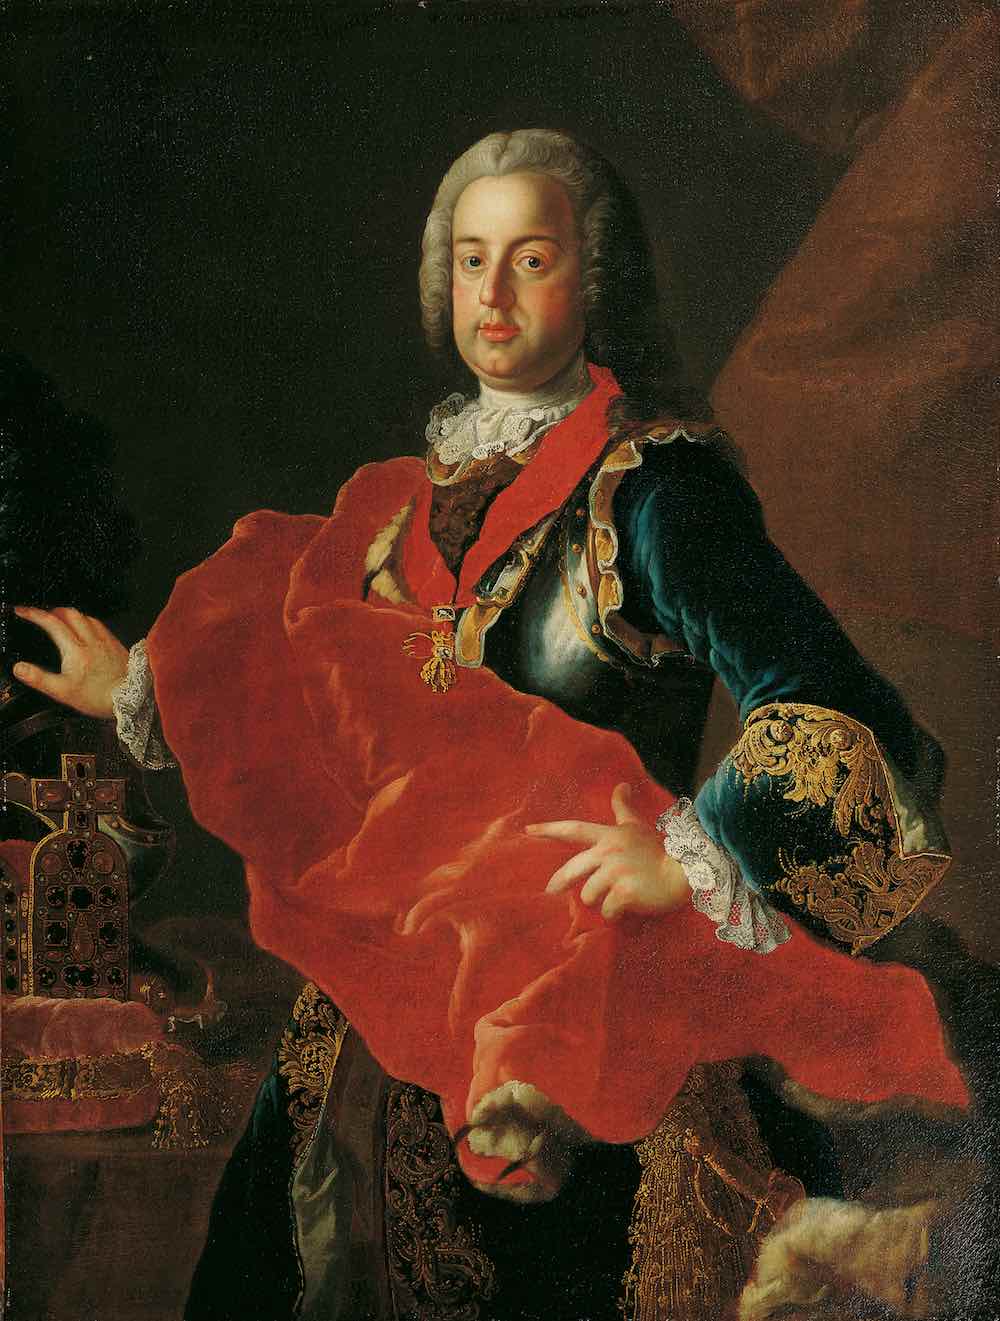 Ritratto di Francesco I di Lorena, primo granduca di Toscana della casata Asburgo-Lorena